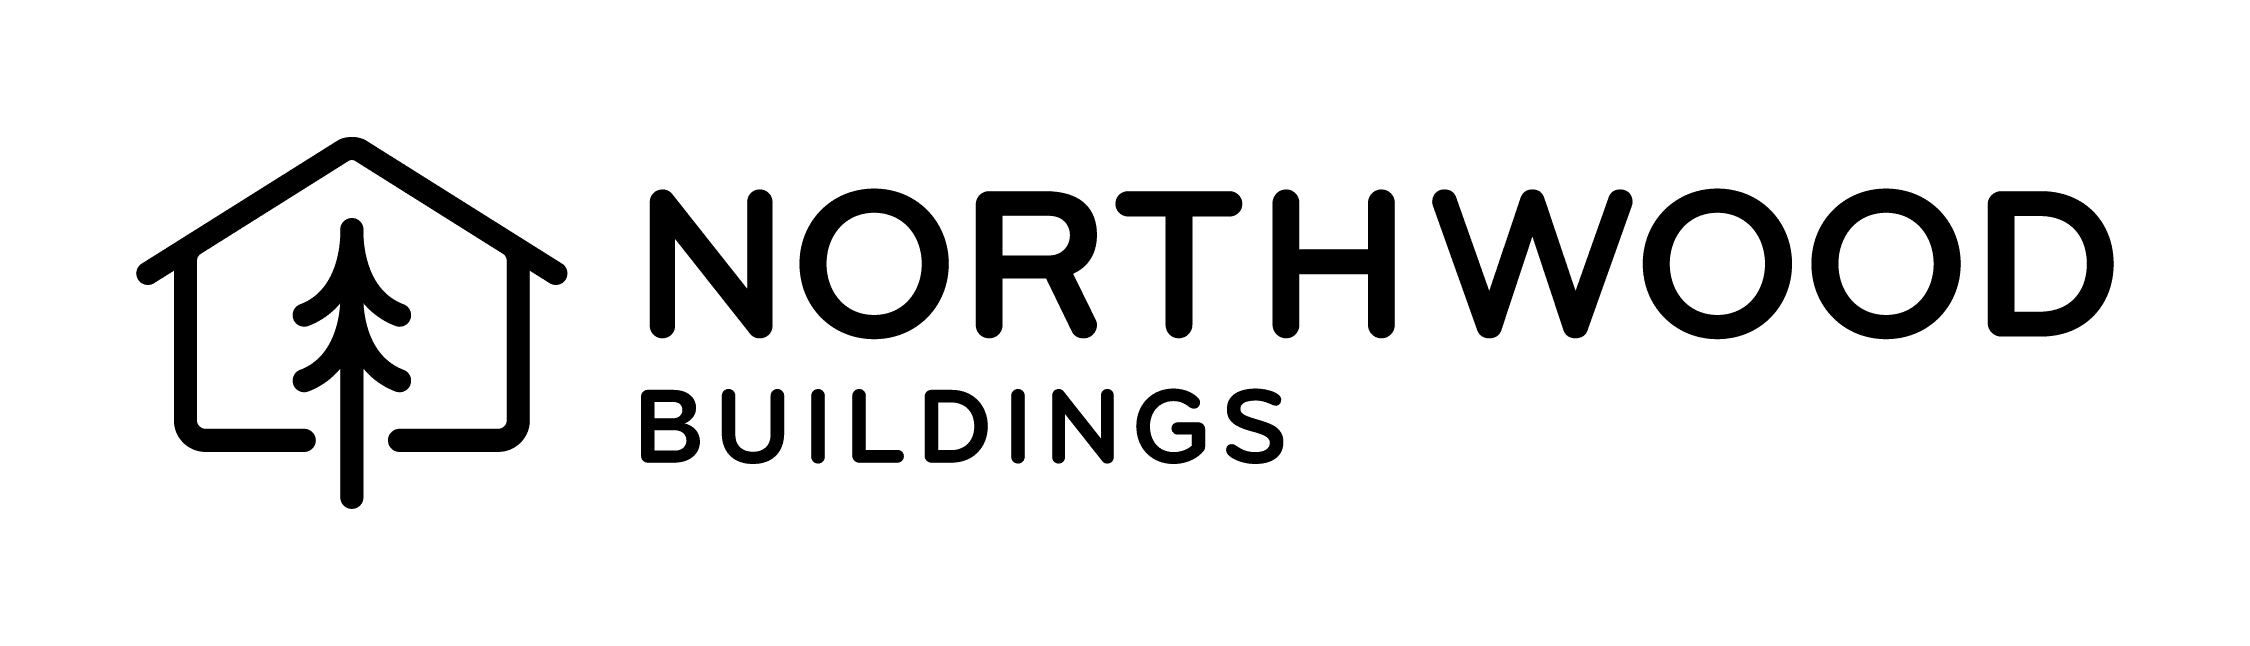 Northwood Buildings